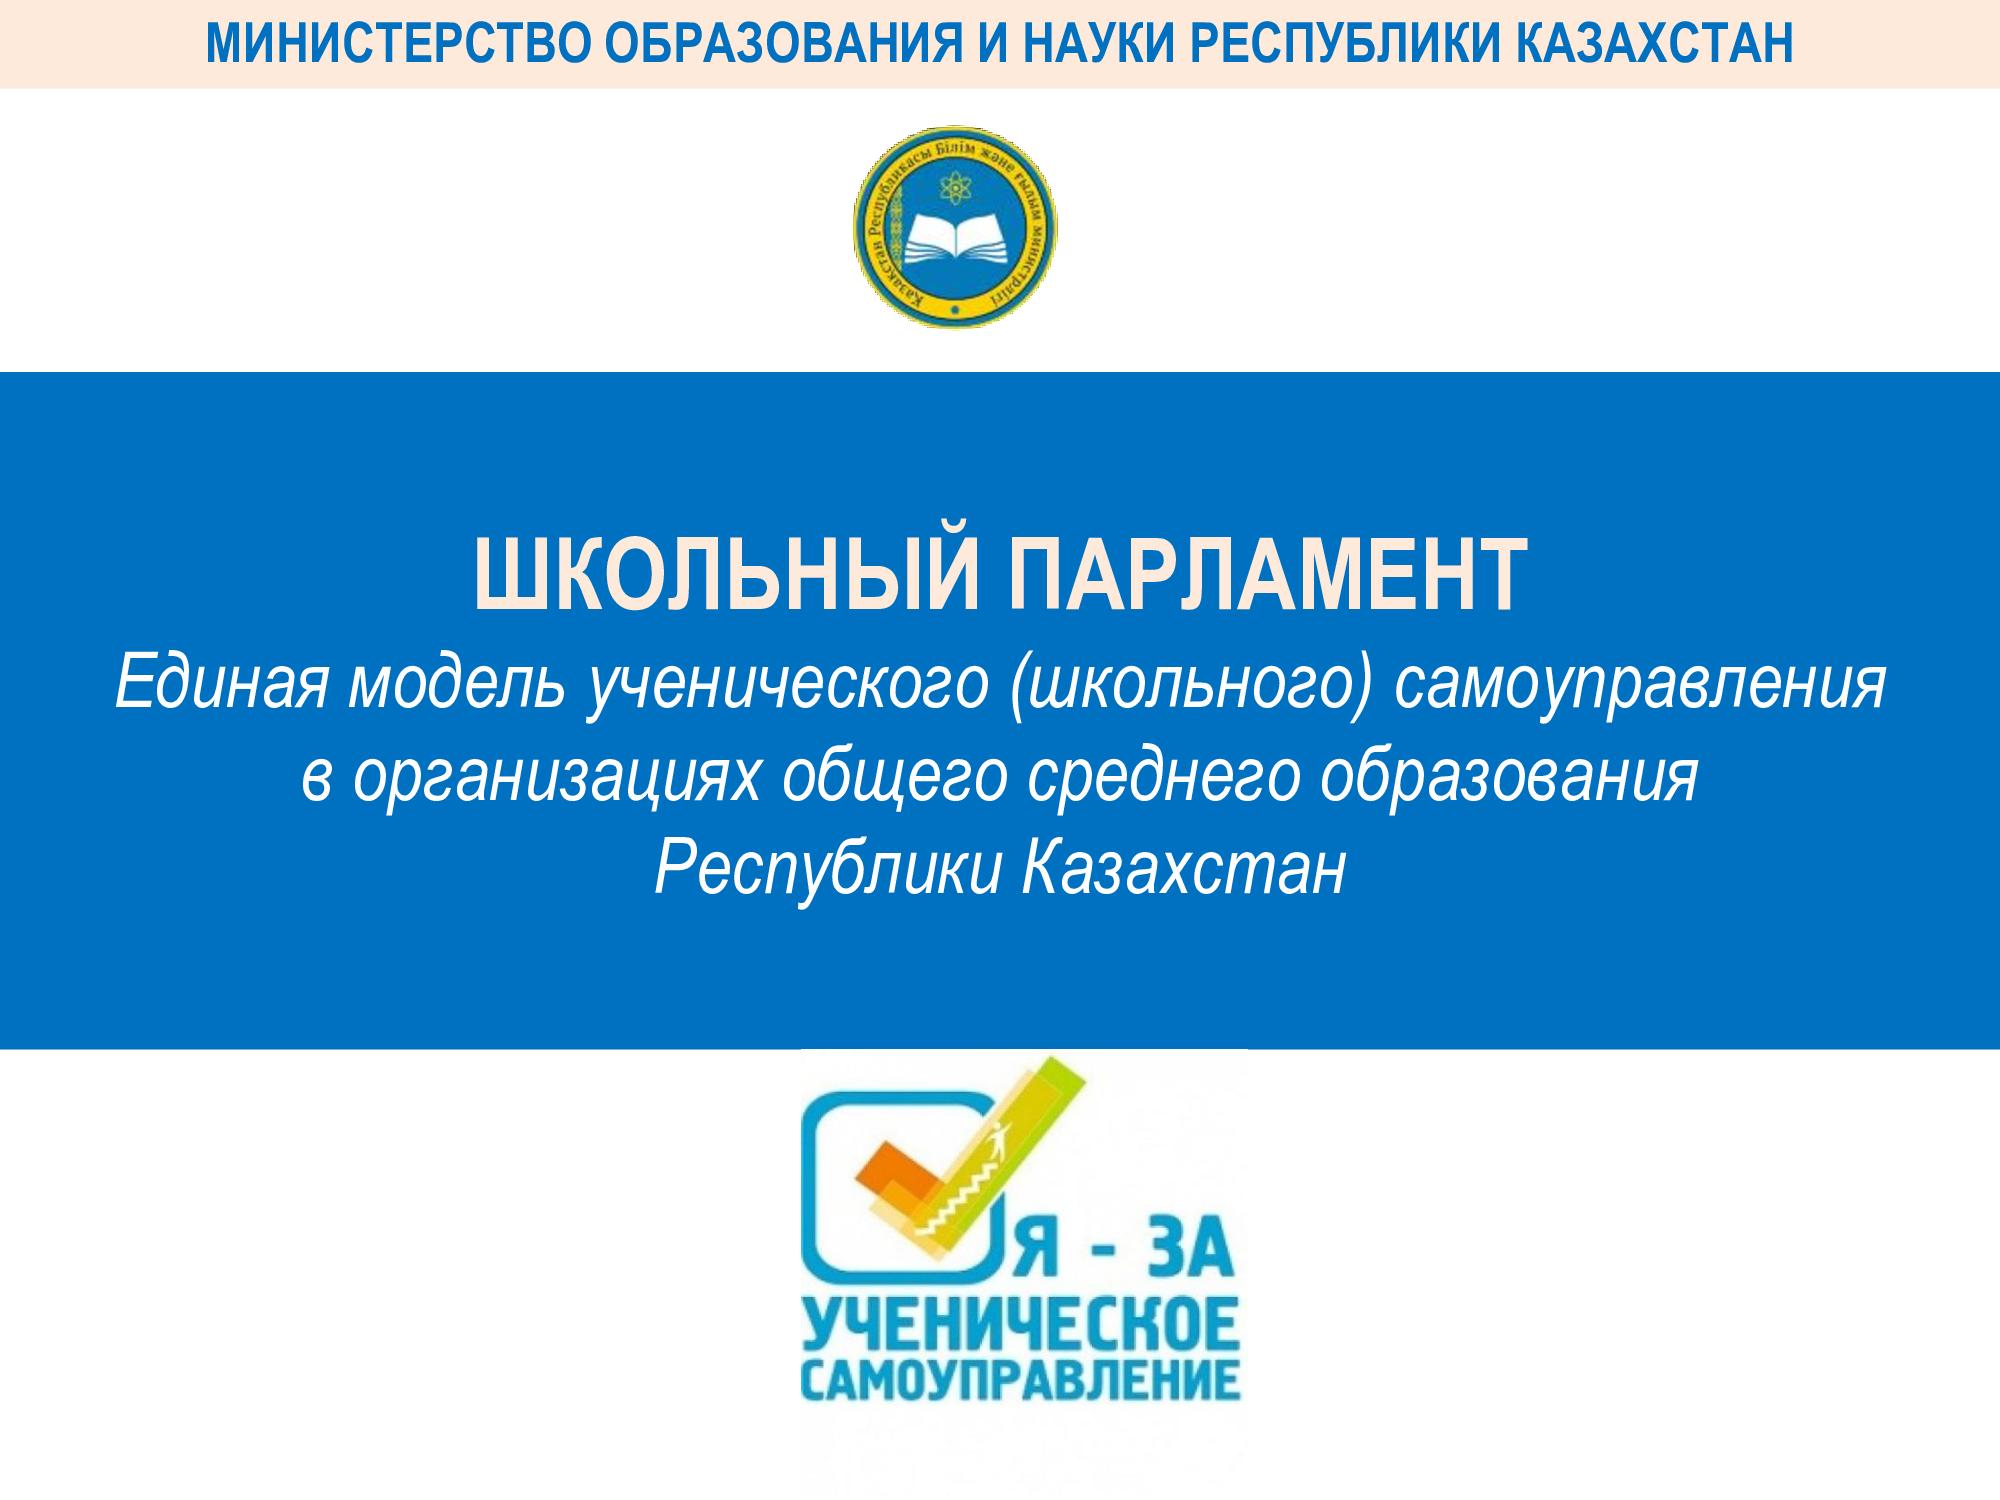 Единая модель ученического (школьного) самоуправления в организациях общего среднего образования Республики Казахстан